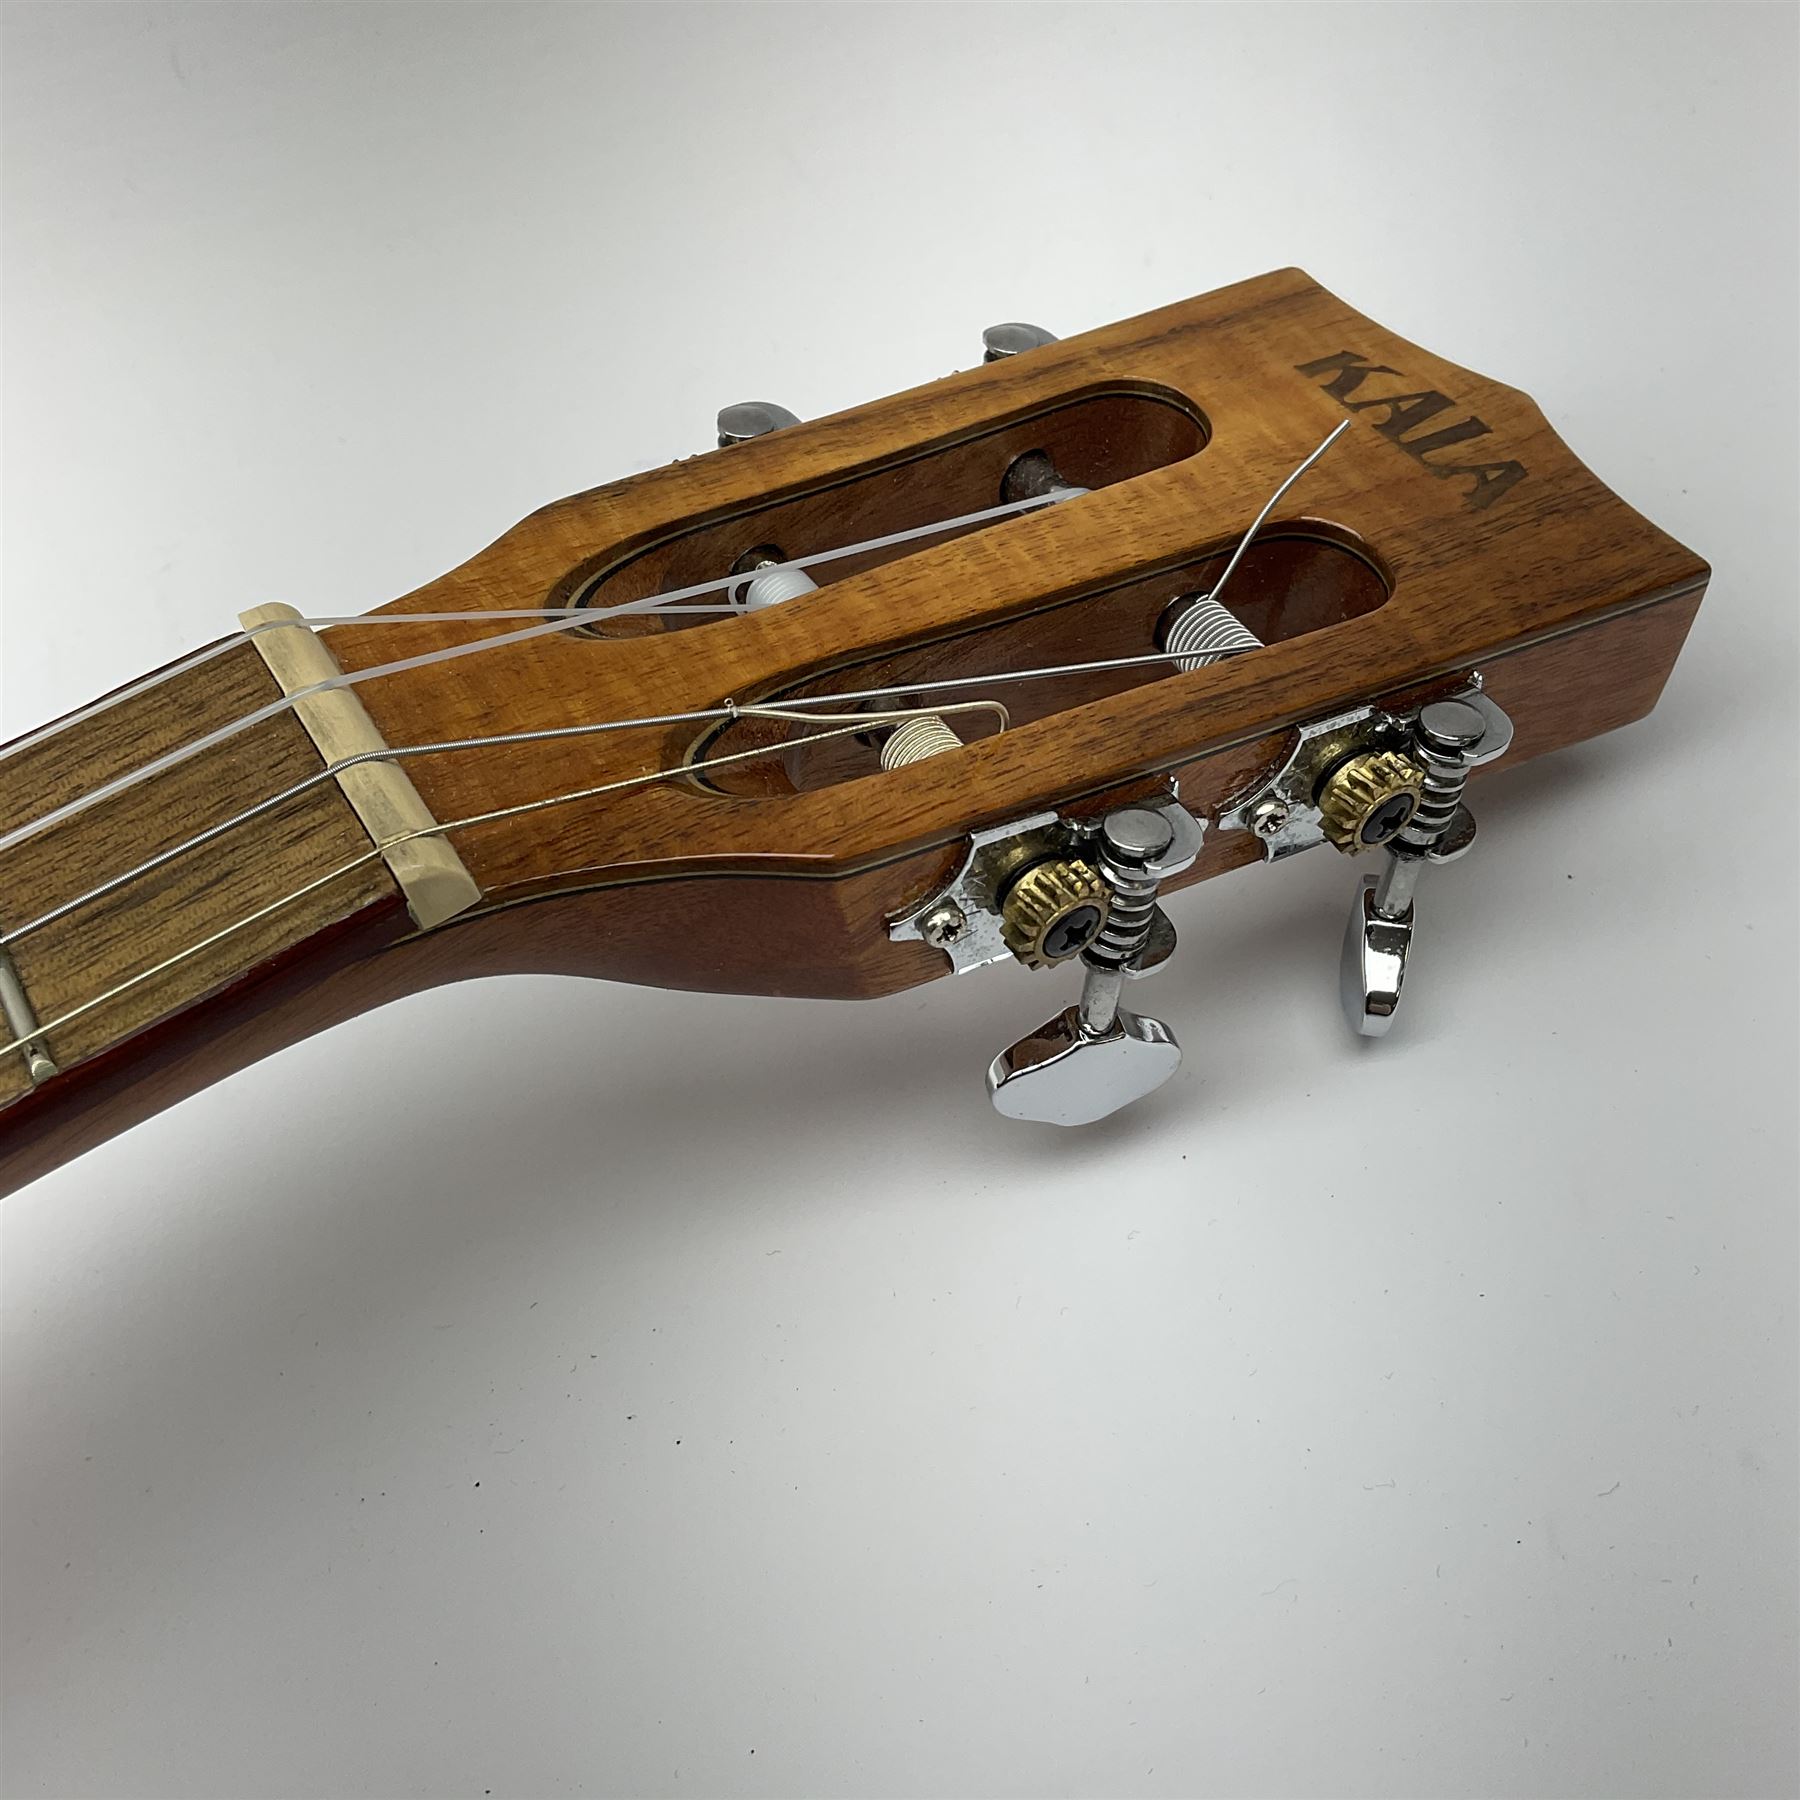 Modern Kala ukulele with acacia back and sides - Image 4 of 12